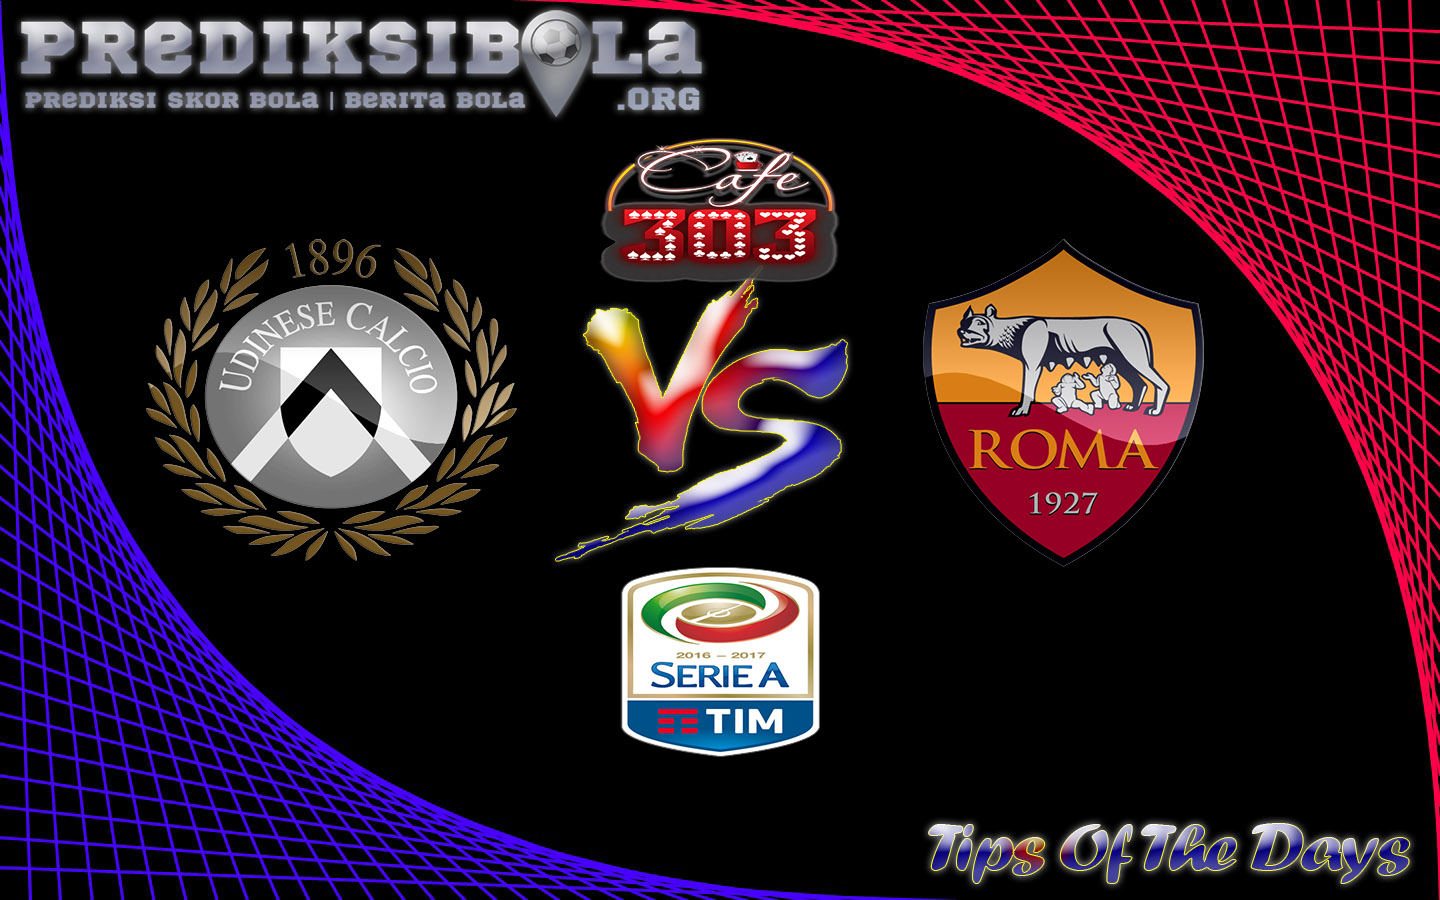 Prediksi Skor Udinese Vs AS Roma 15 Januari 2017